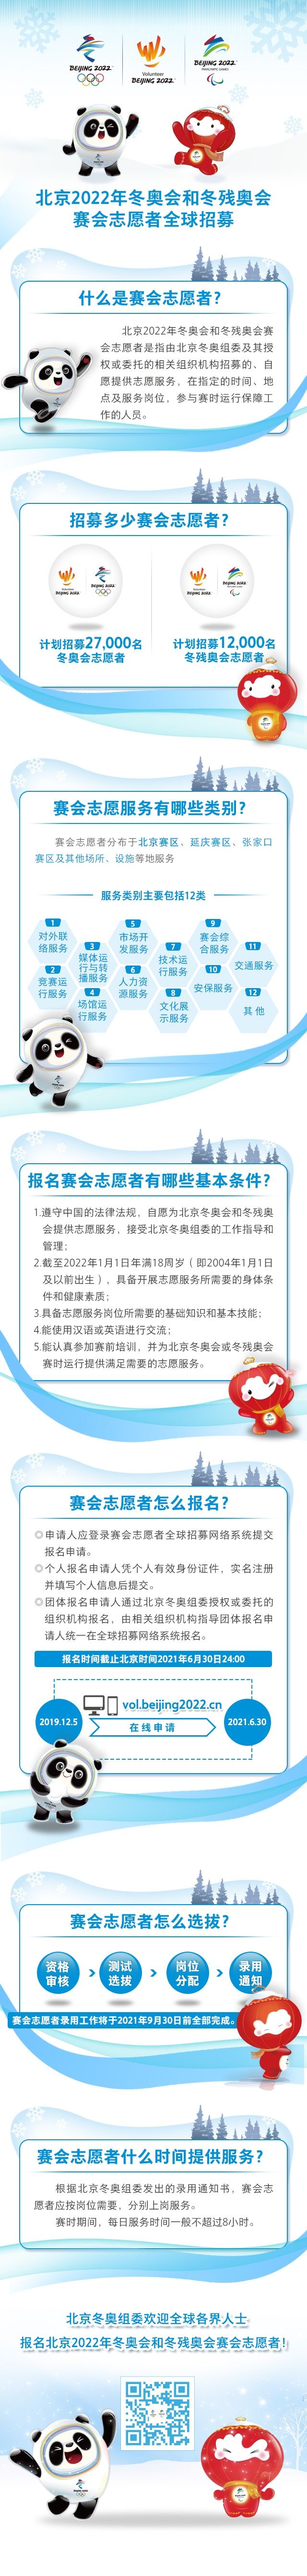 北京2022冬奥会和冬残奥会志愿者报名